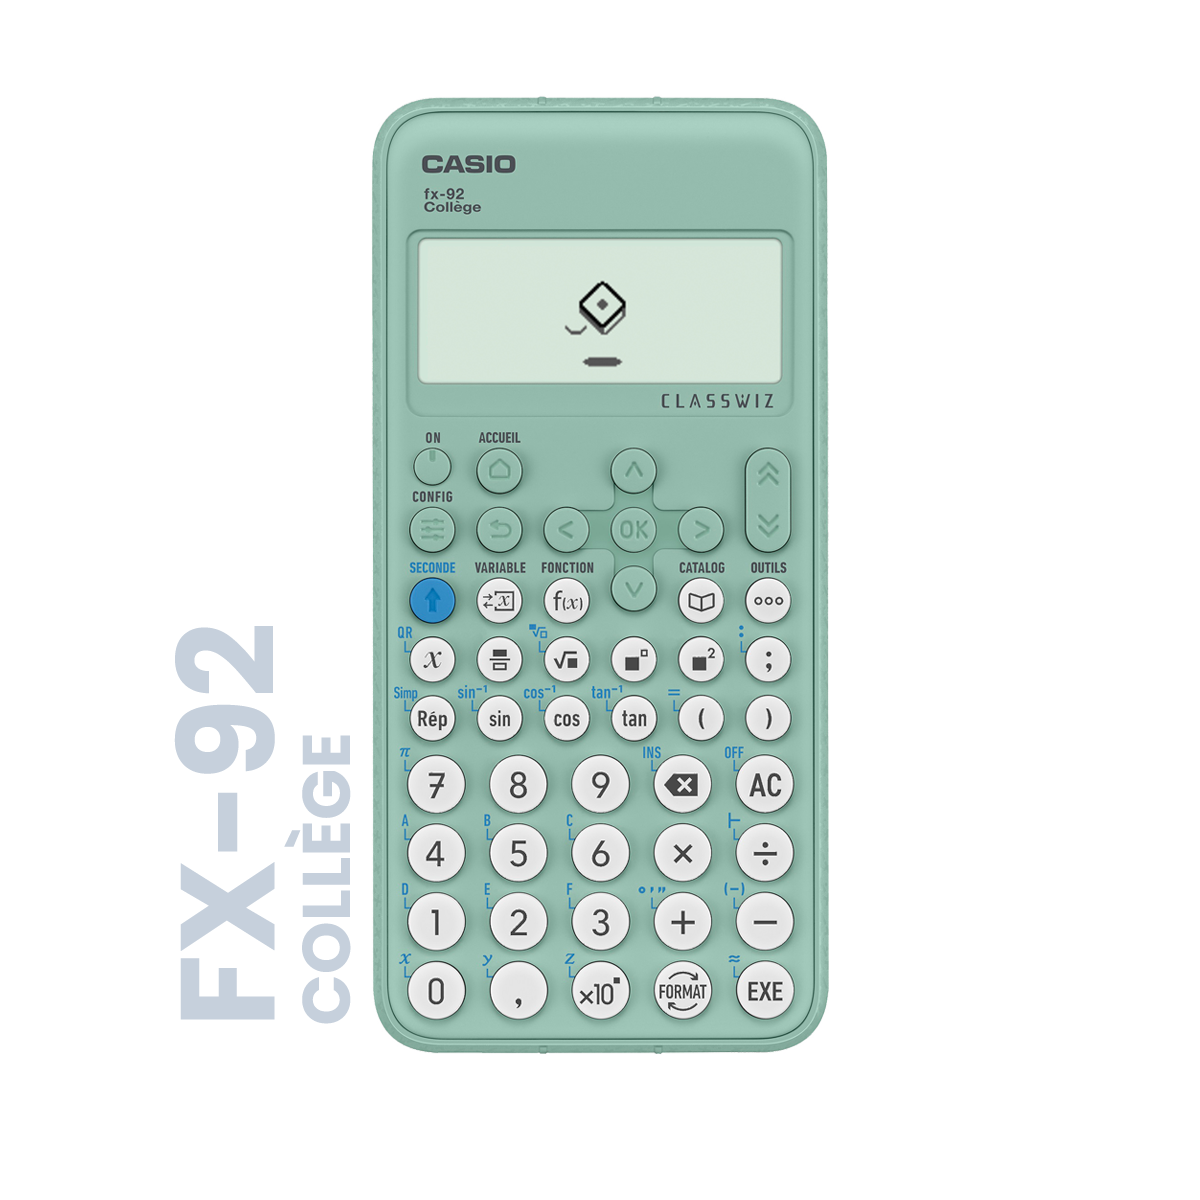 Casio FX92 COLLEGE 2D+, Poche, Calculatrice scientifique, 10